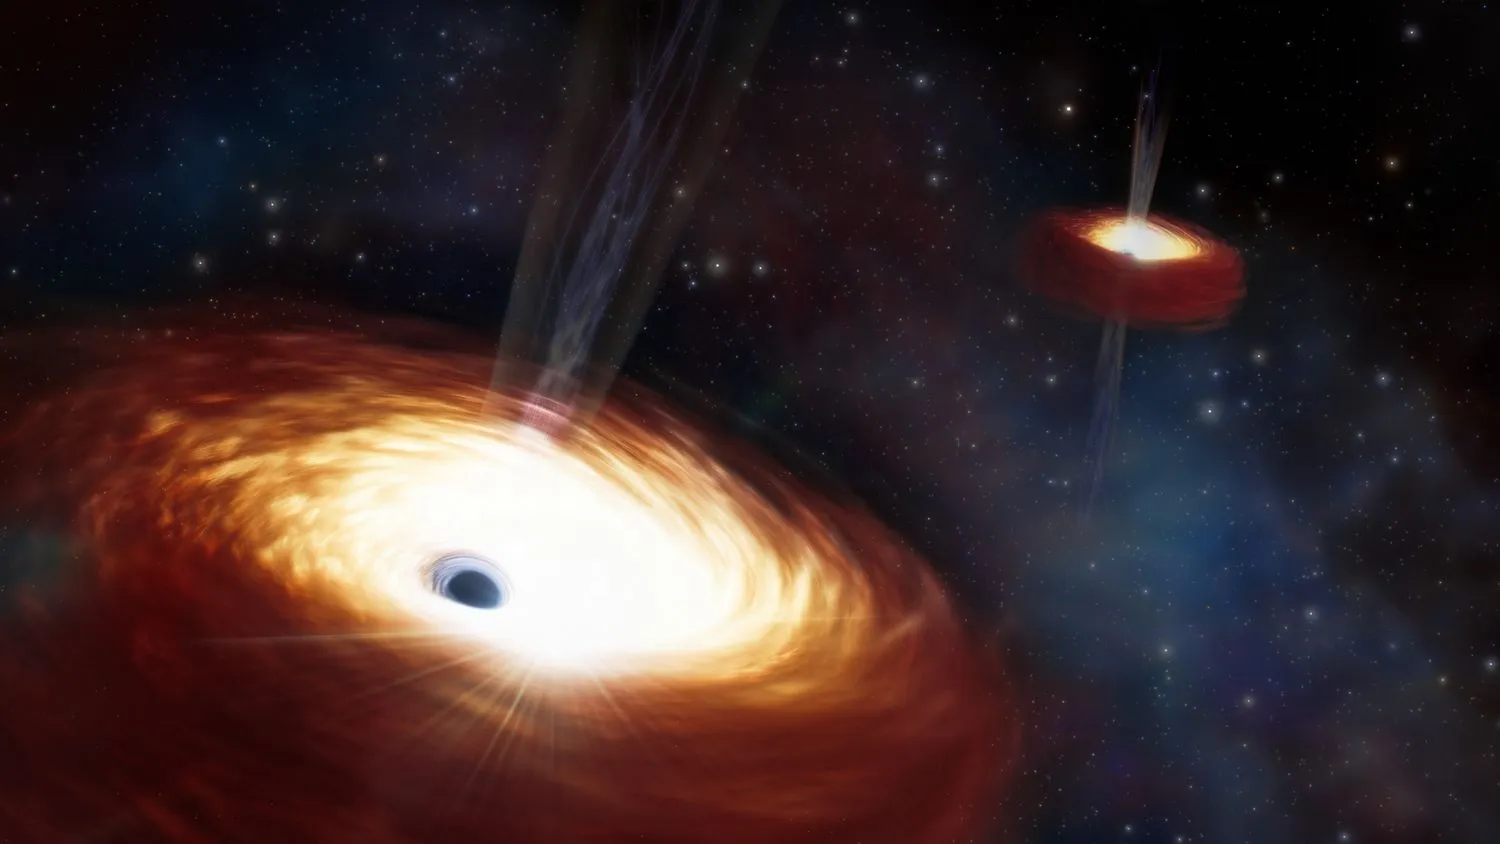 Eine Illustration zeigt zwei supermassive Schwarze Löcher, die durch ihre Größe blockiert und an der Verschmelzung gehindert werden